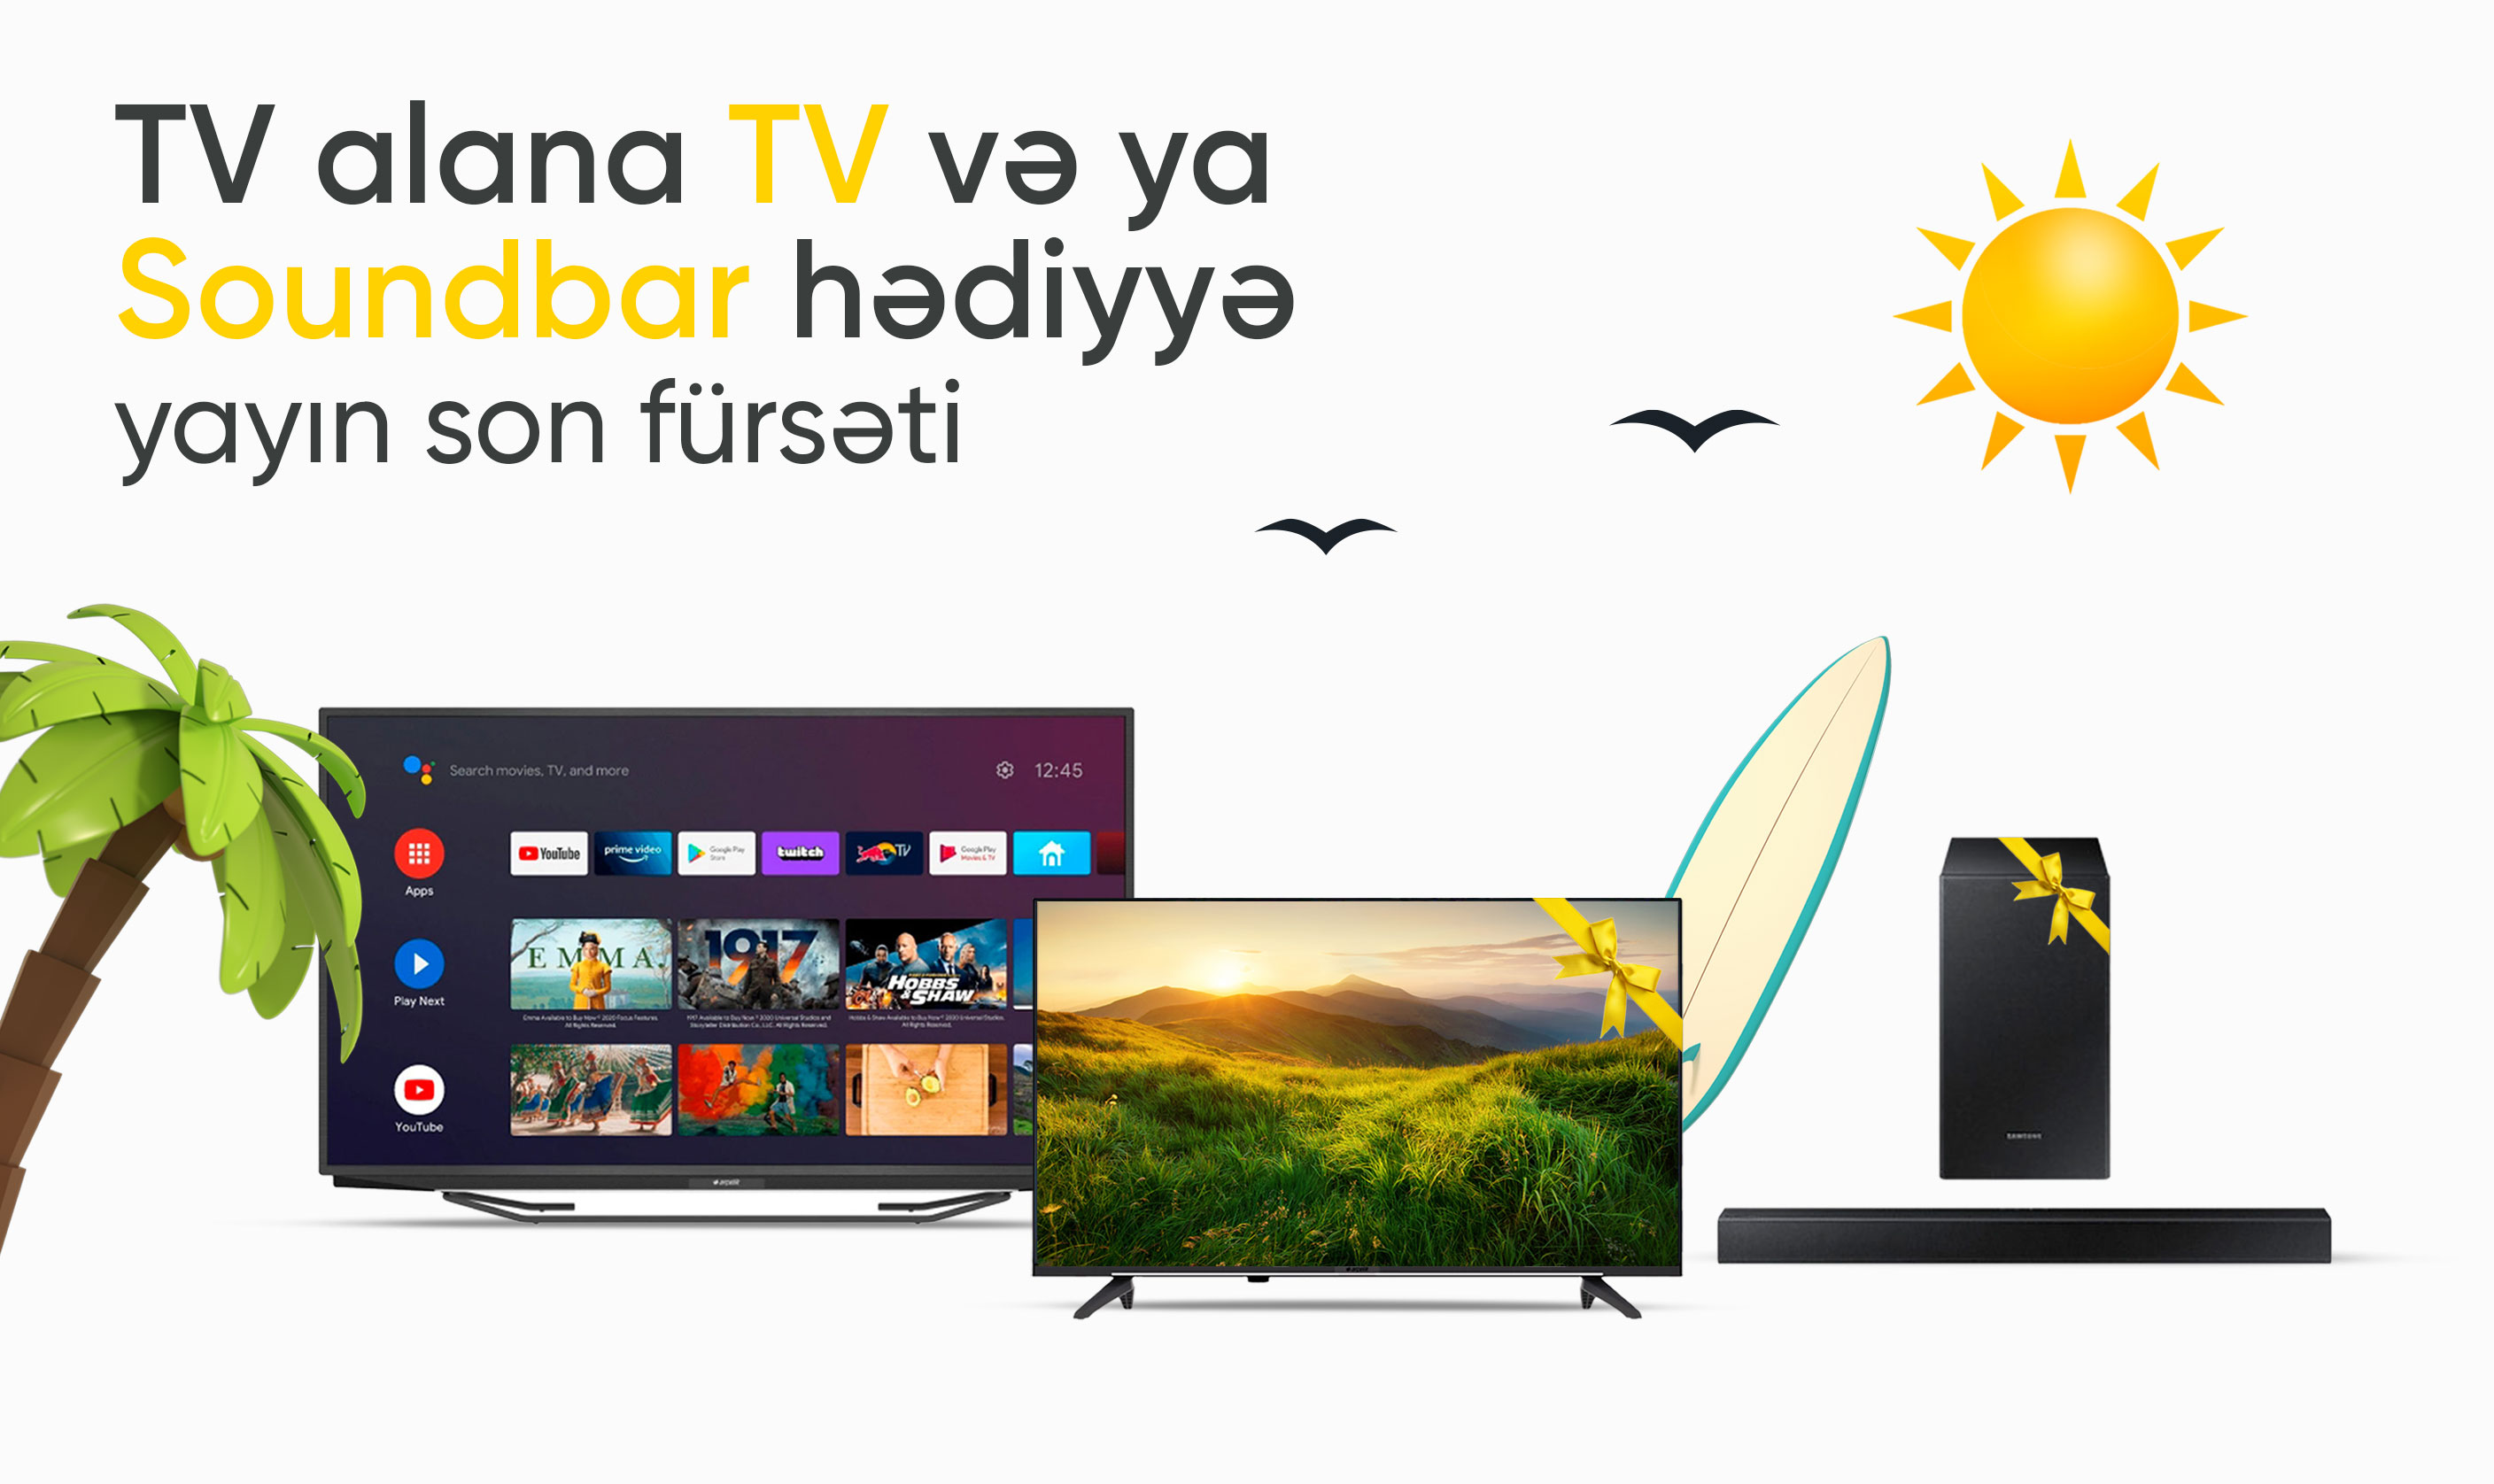 Yayın son fürsəti - TV